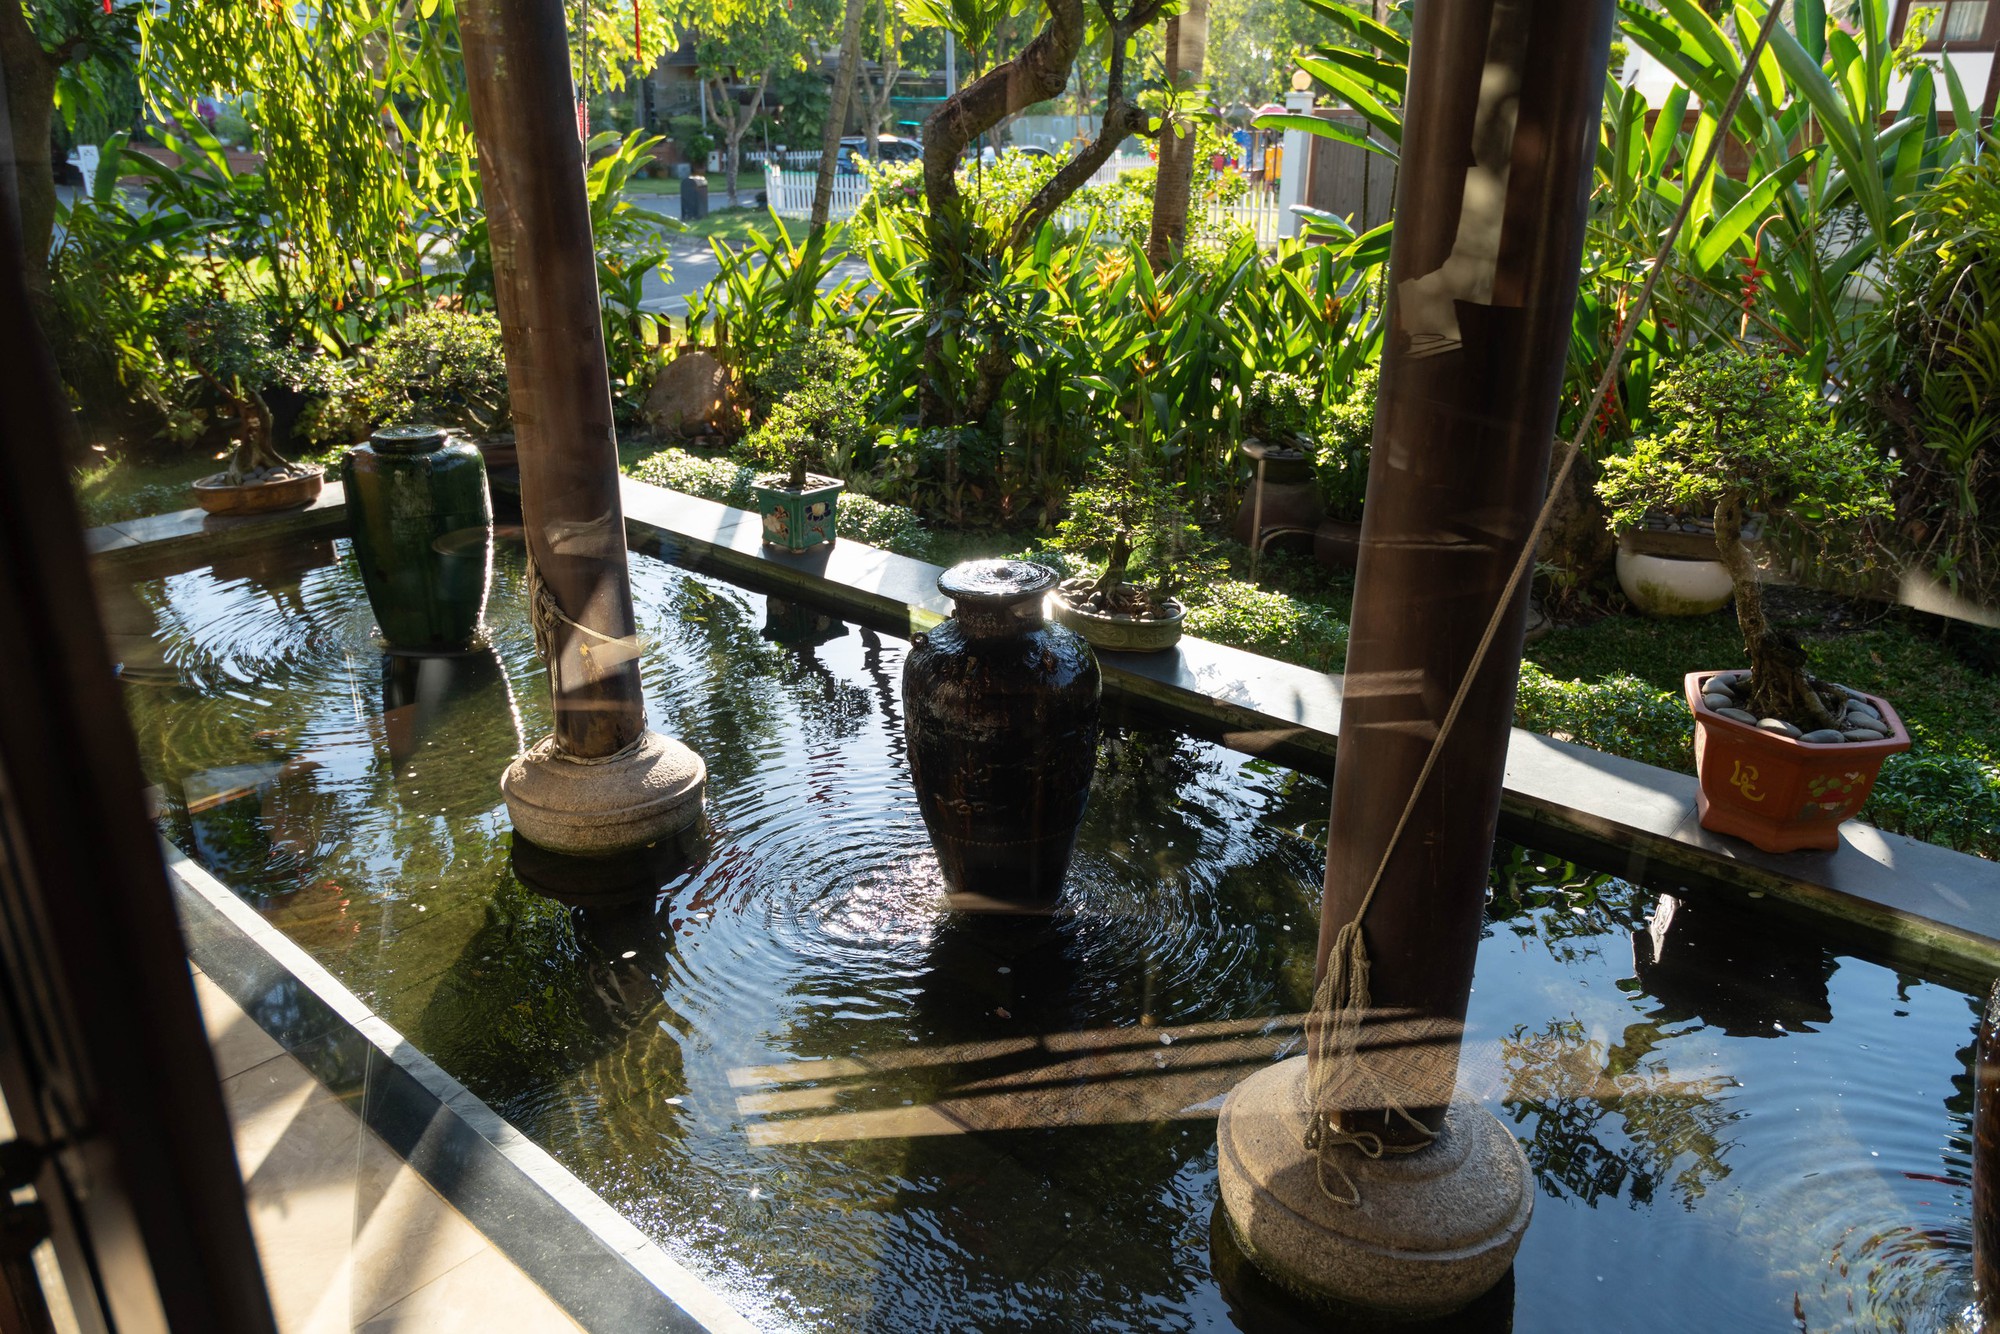 Biệt thự nhà vườn gần 20 năm tuổi của HH Hà Kiều Anh: Phong vị Á Đông cổ kính, khẳng định không bao giờ bán- Ảnh 19.